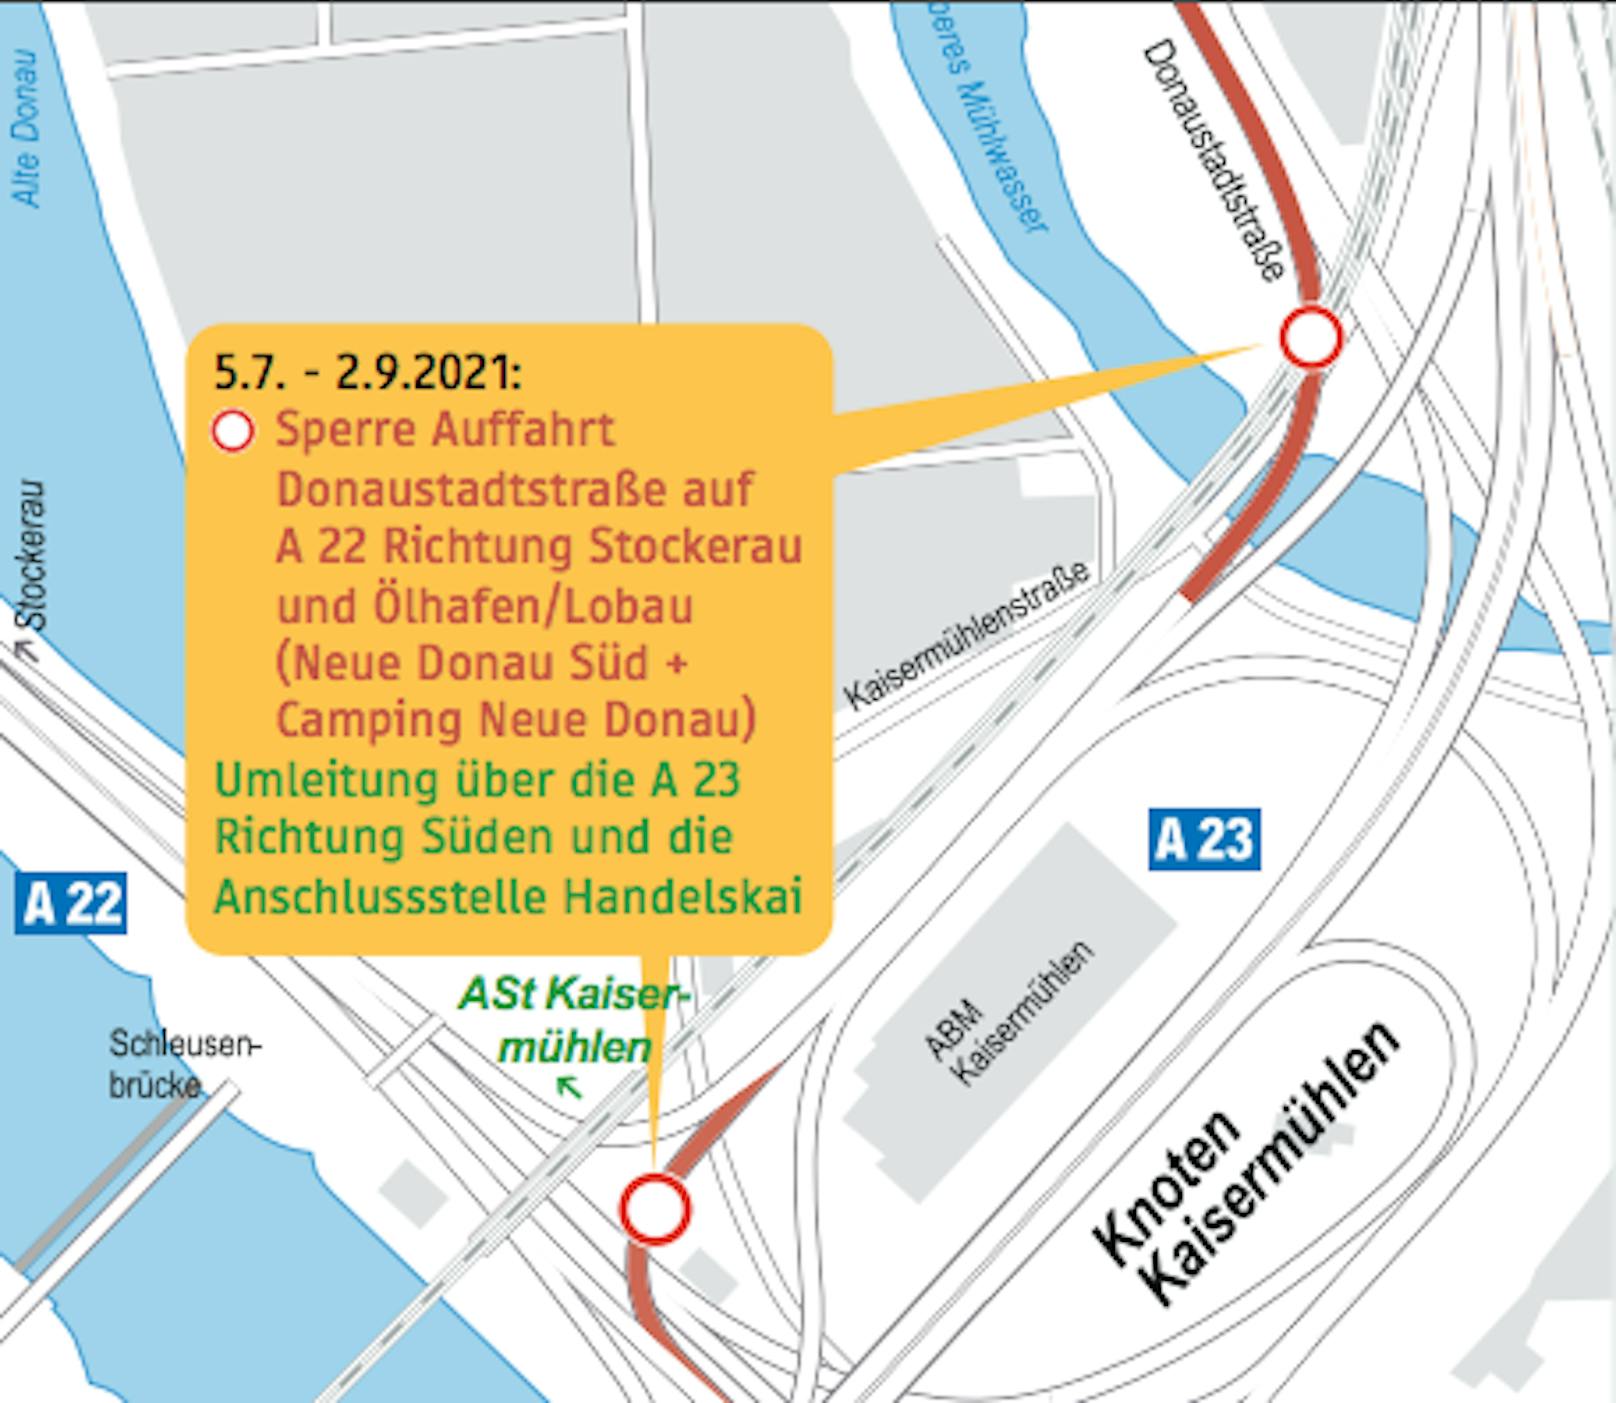 Wegen der Sperre der A22-Auffahrt von Donaustadt wird der Verkehr über die A23 umgeleitet.